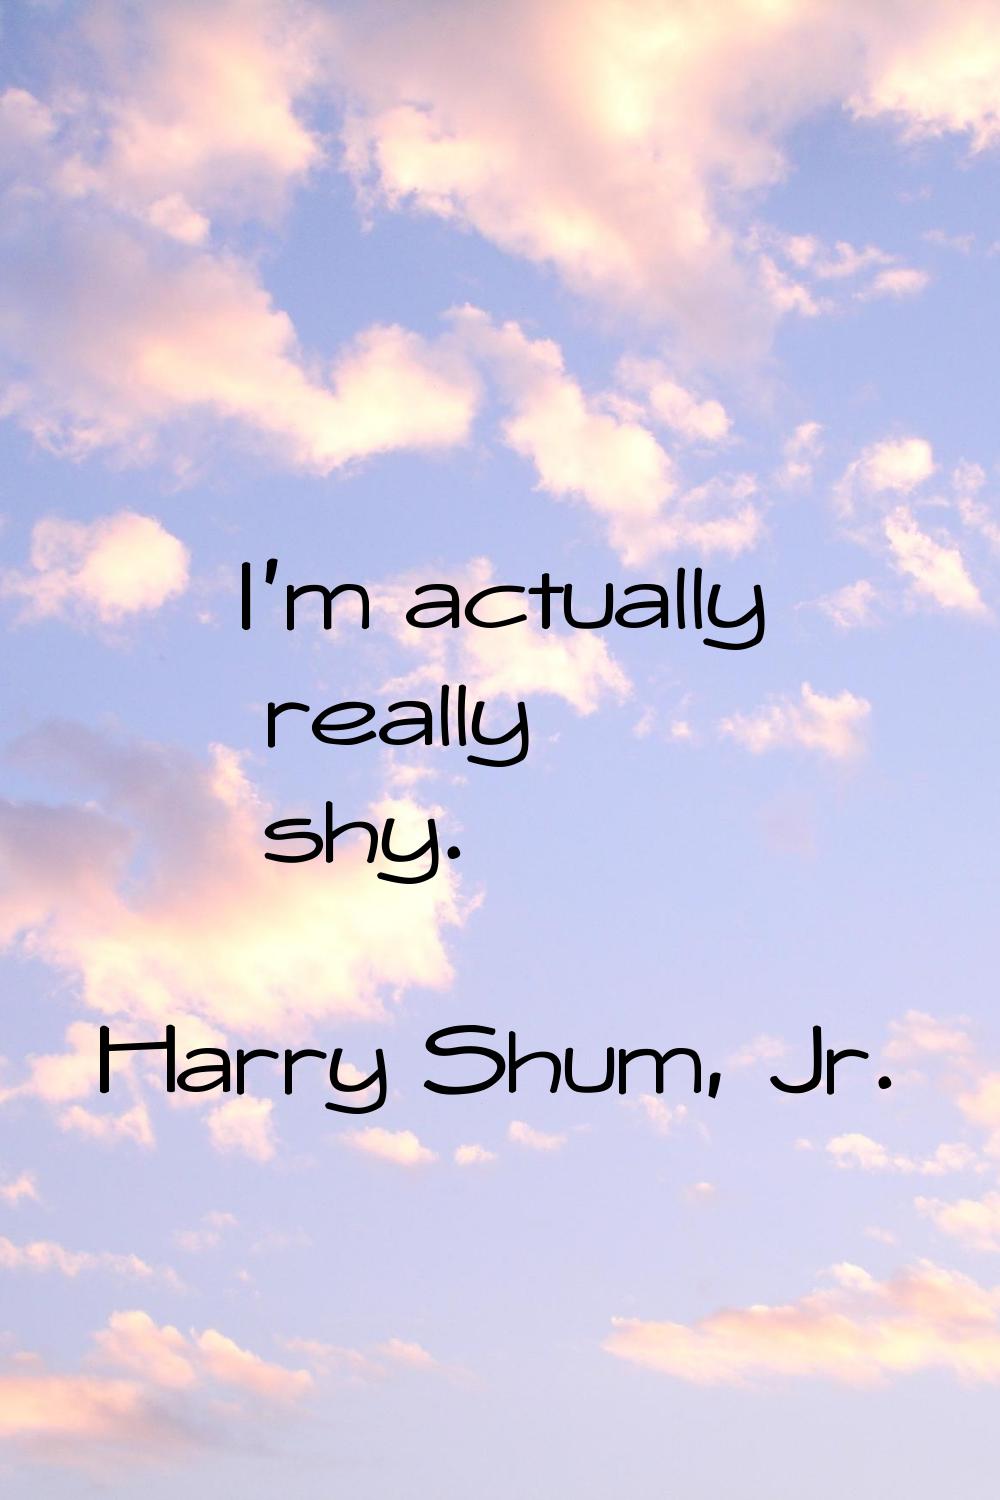 I'm actually really shy.